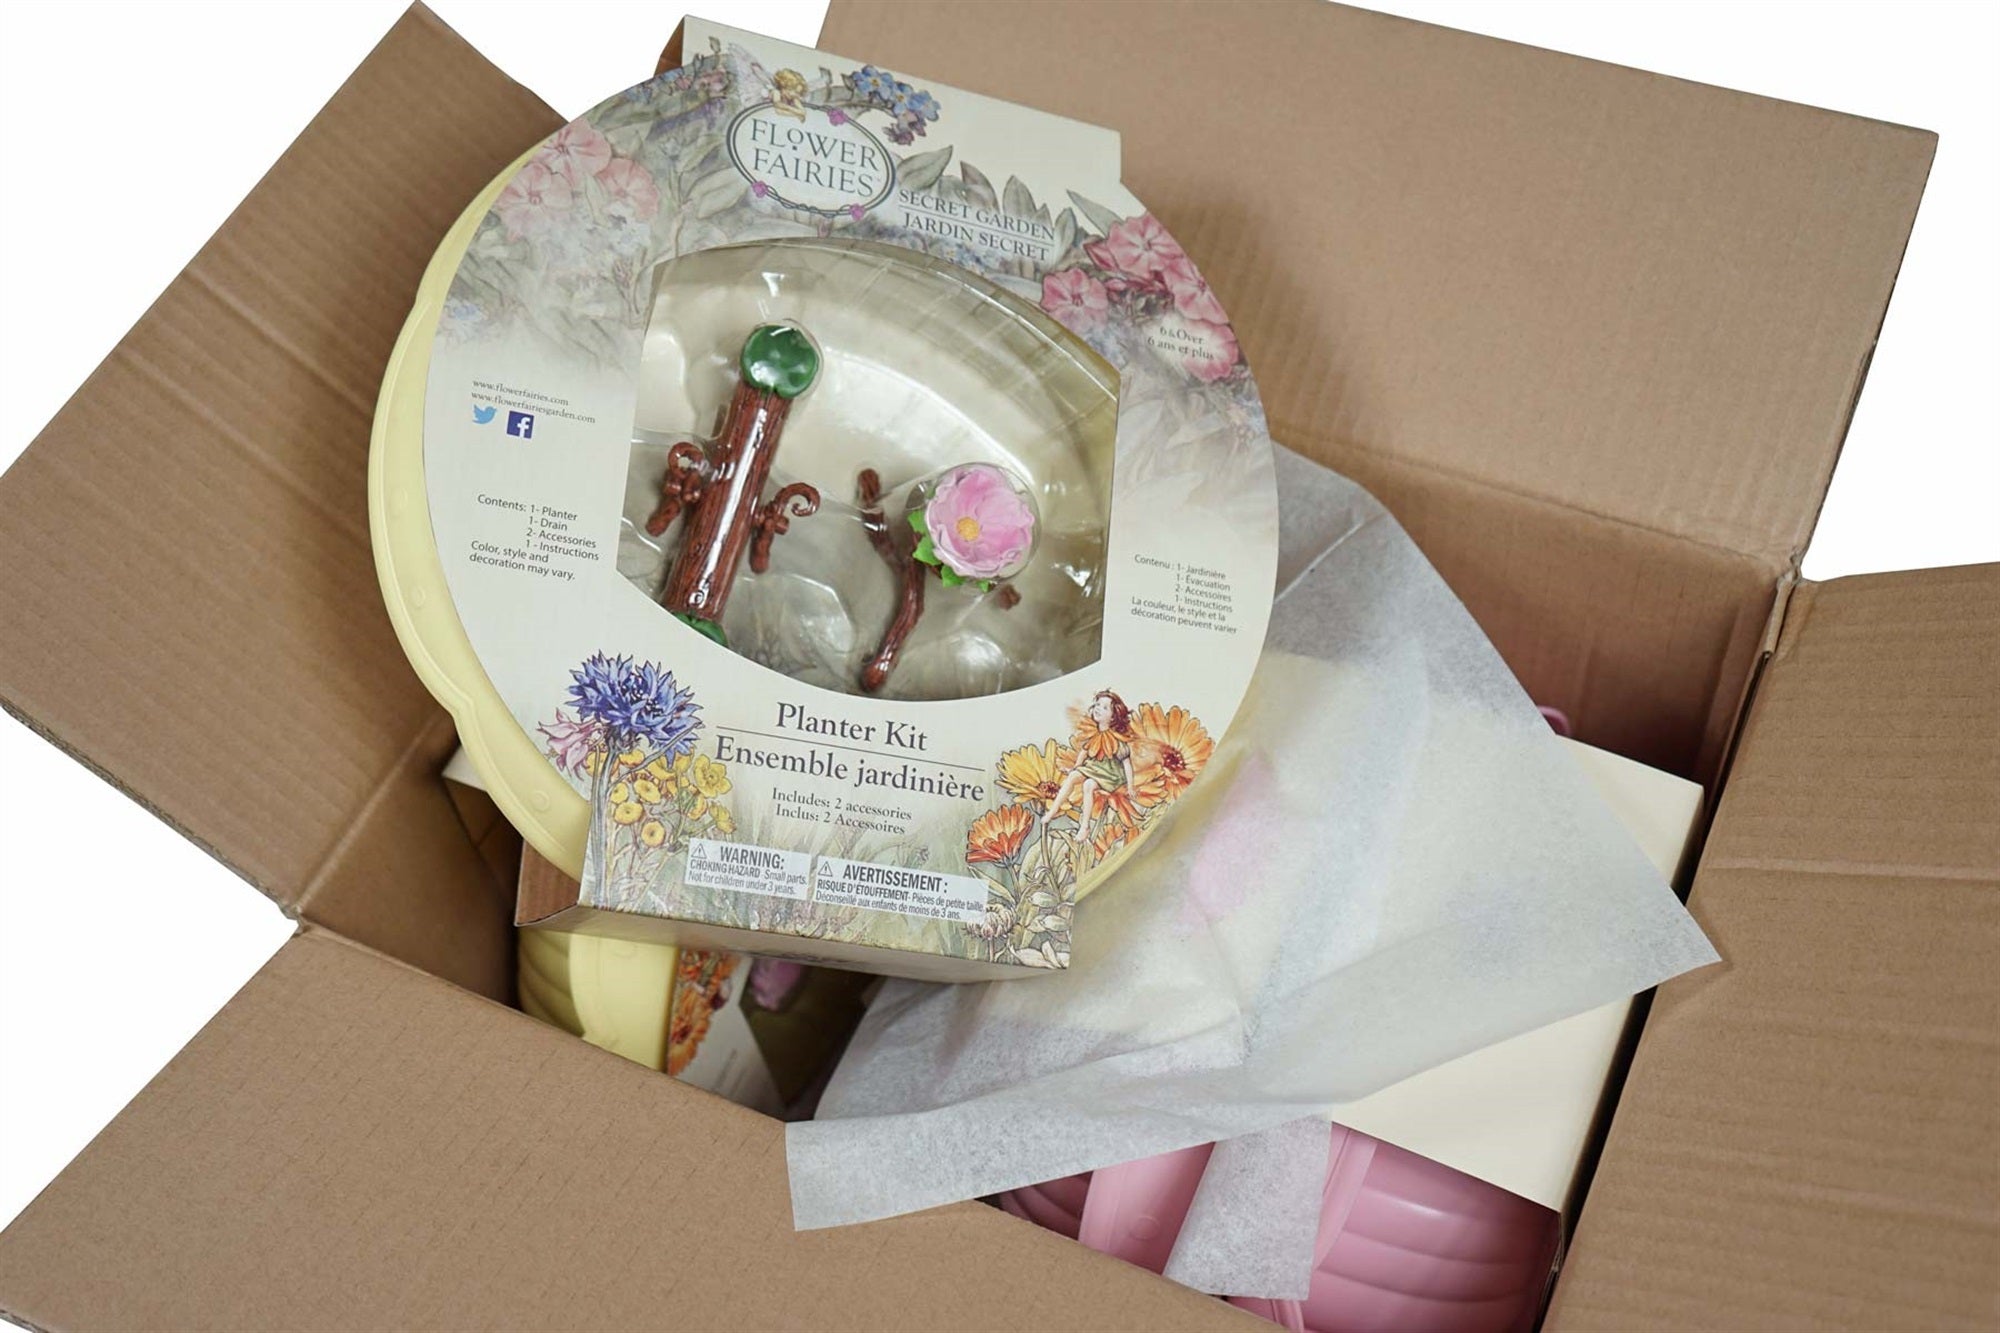 Flower Fairies Mixed Case Planter Kits For Garden, Bulk (Pack of 4)